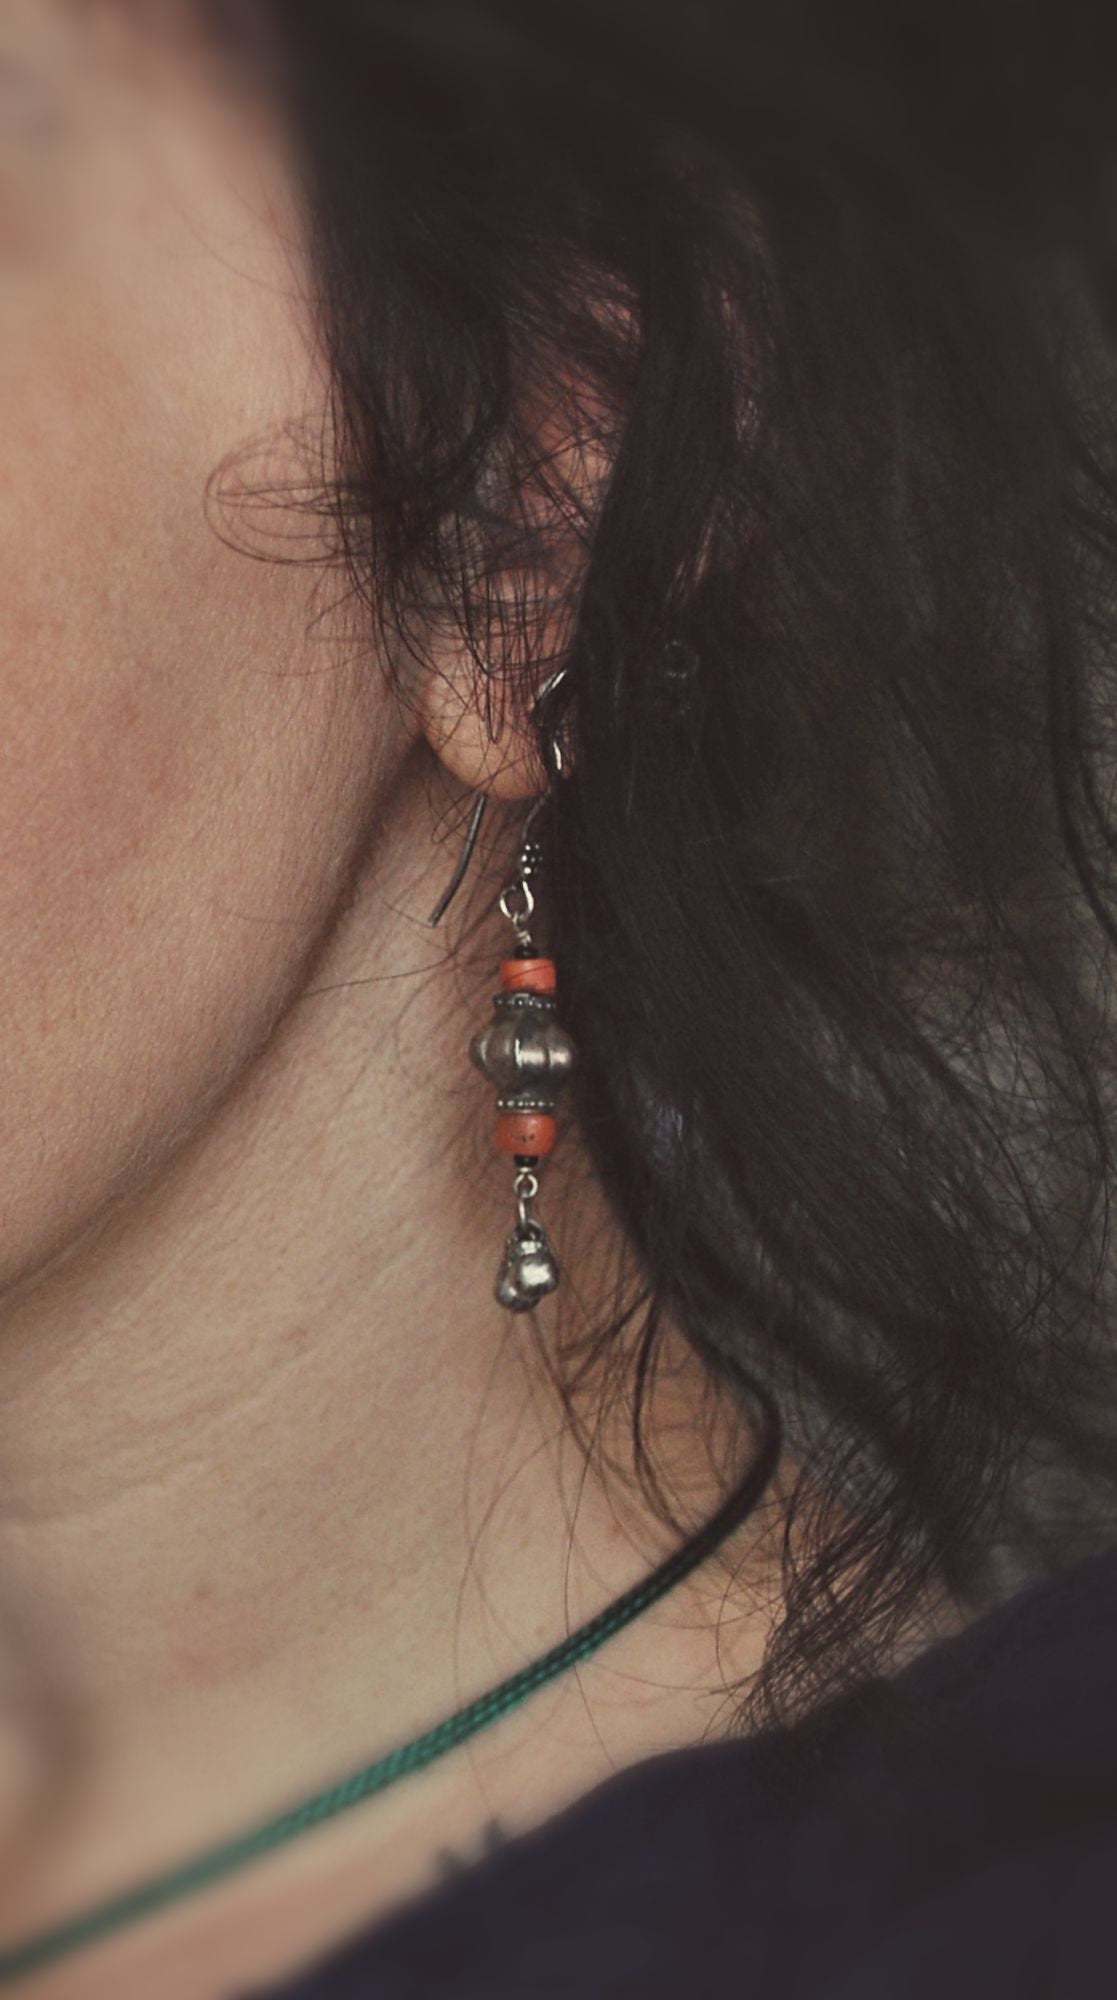 Afghani Silver Coral Dangle Earrings - Afghani Earrings - Afghani Jewelry - Ethnic Earrings - Tribal Earrings - Afghan Earrings